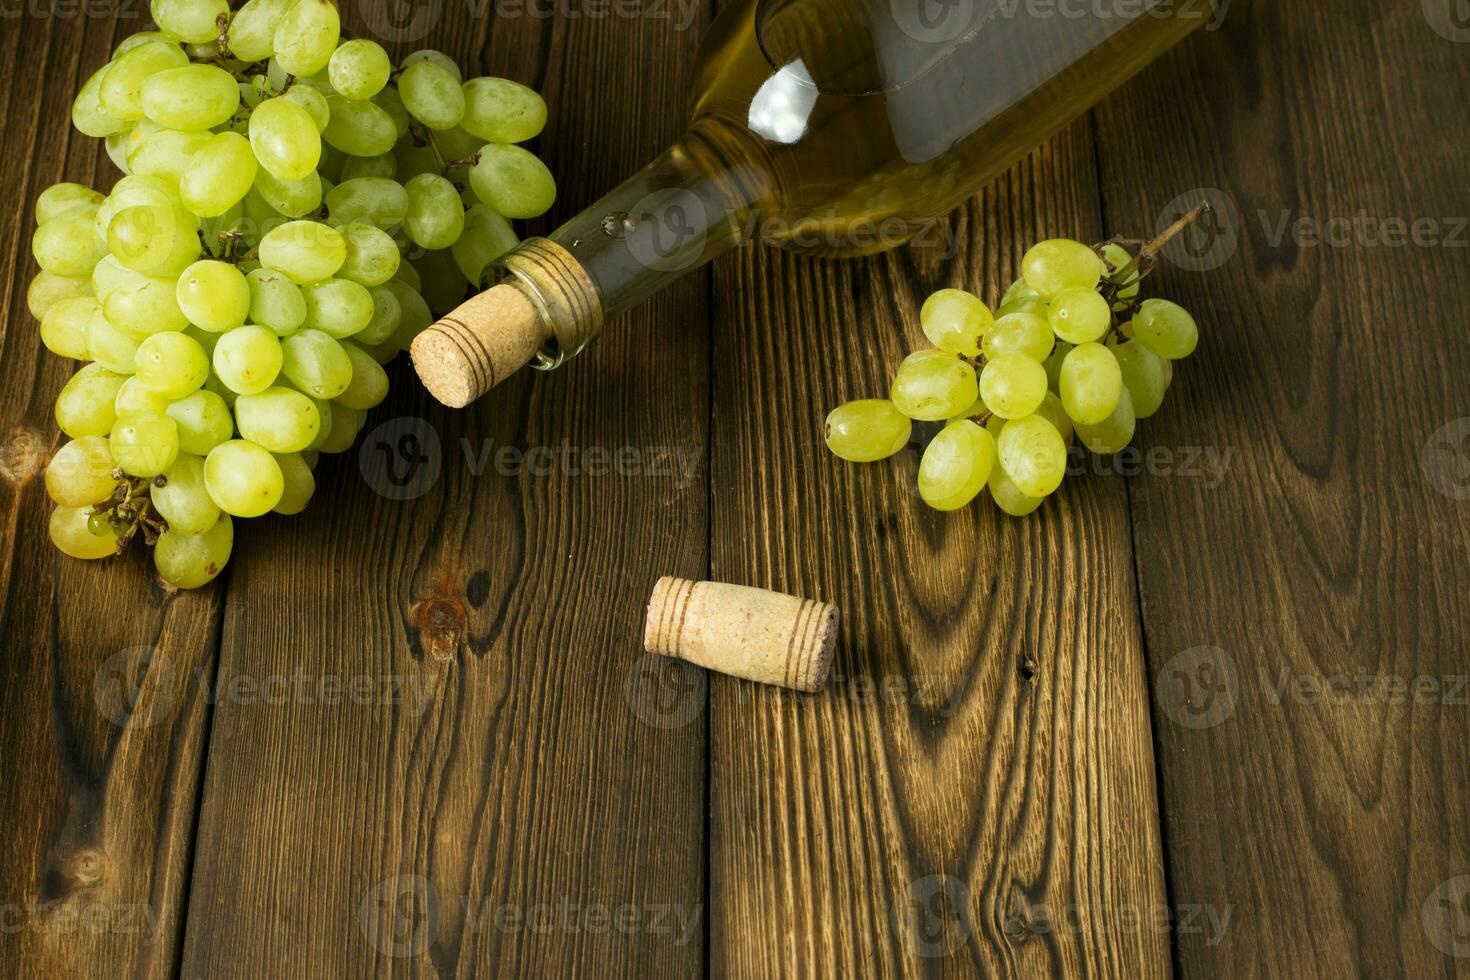 vaso botella de vino con corchos en de madera mesa antecedentes foto